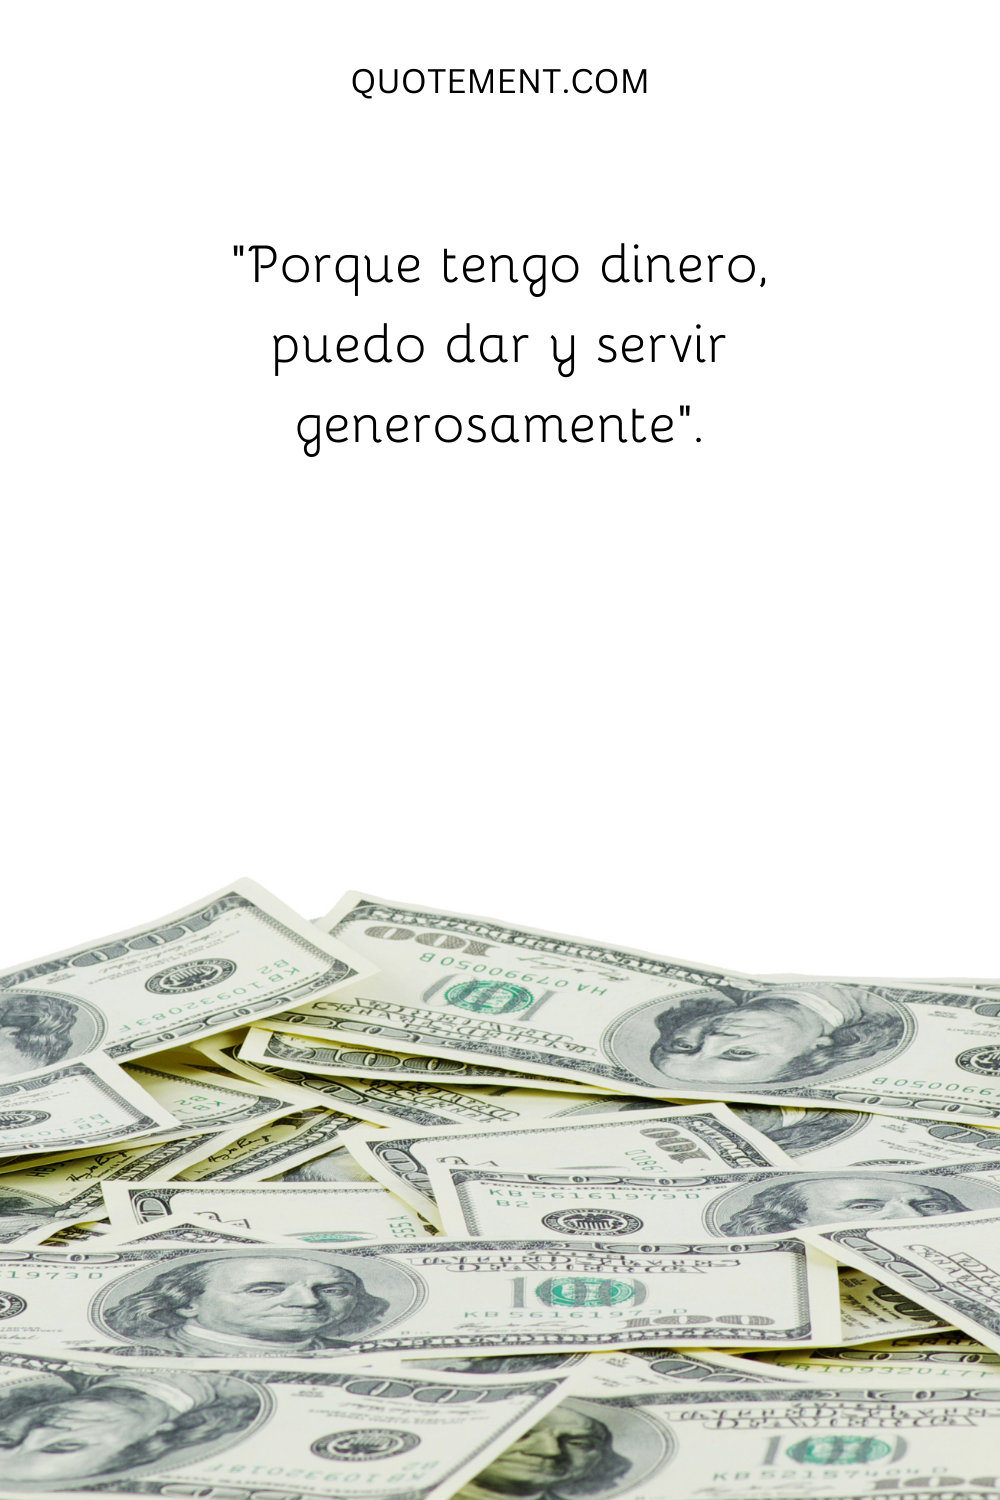 "Porque tengo dinero, puedo dar y servir generosamente".